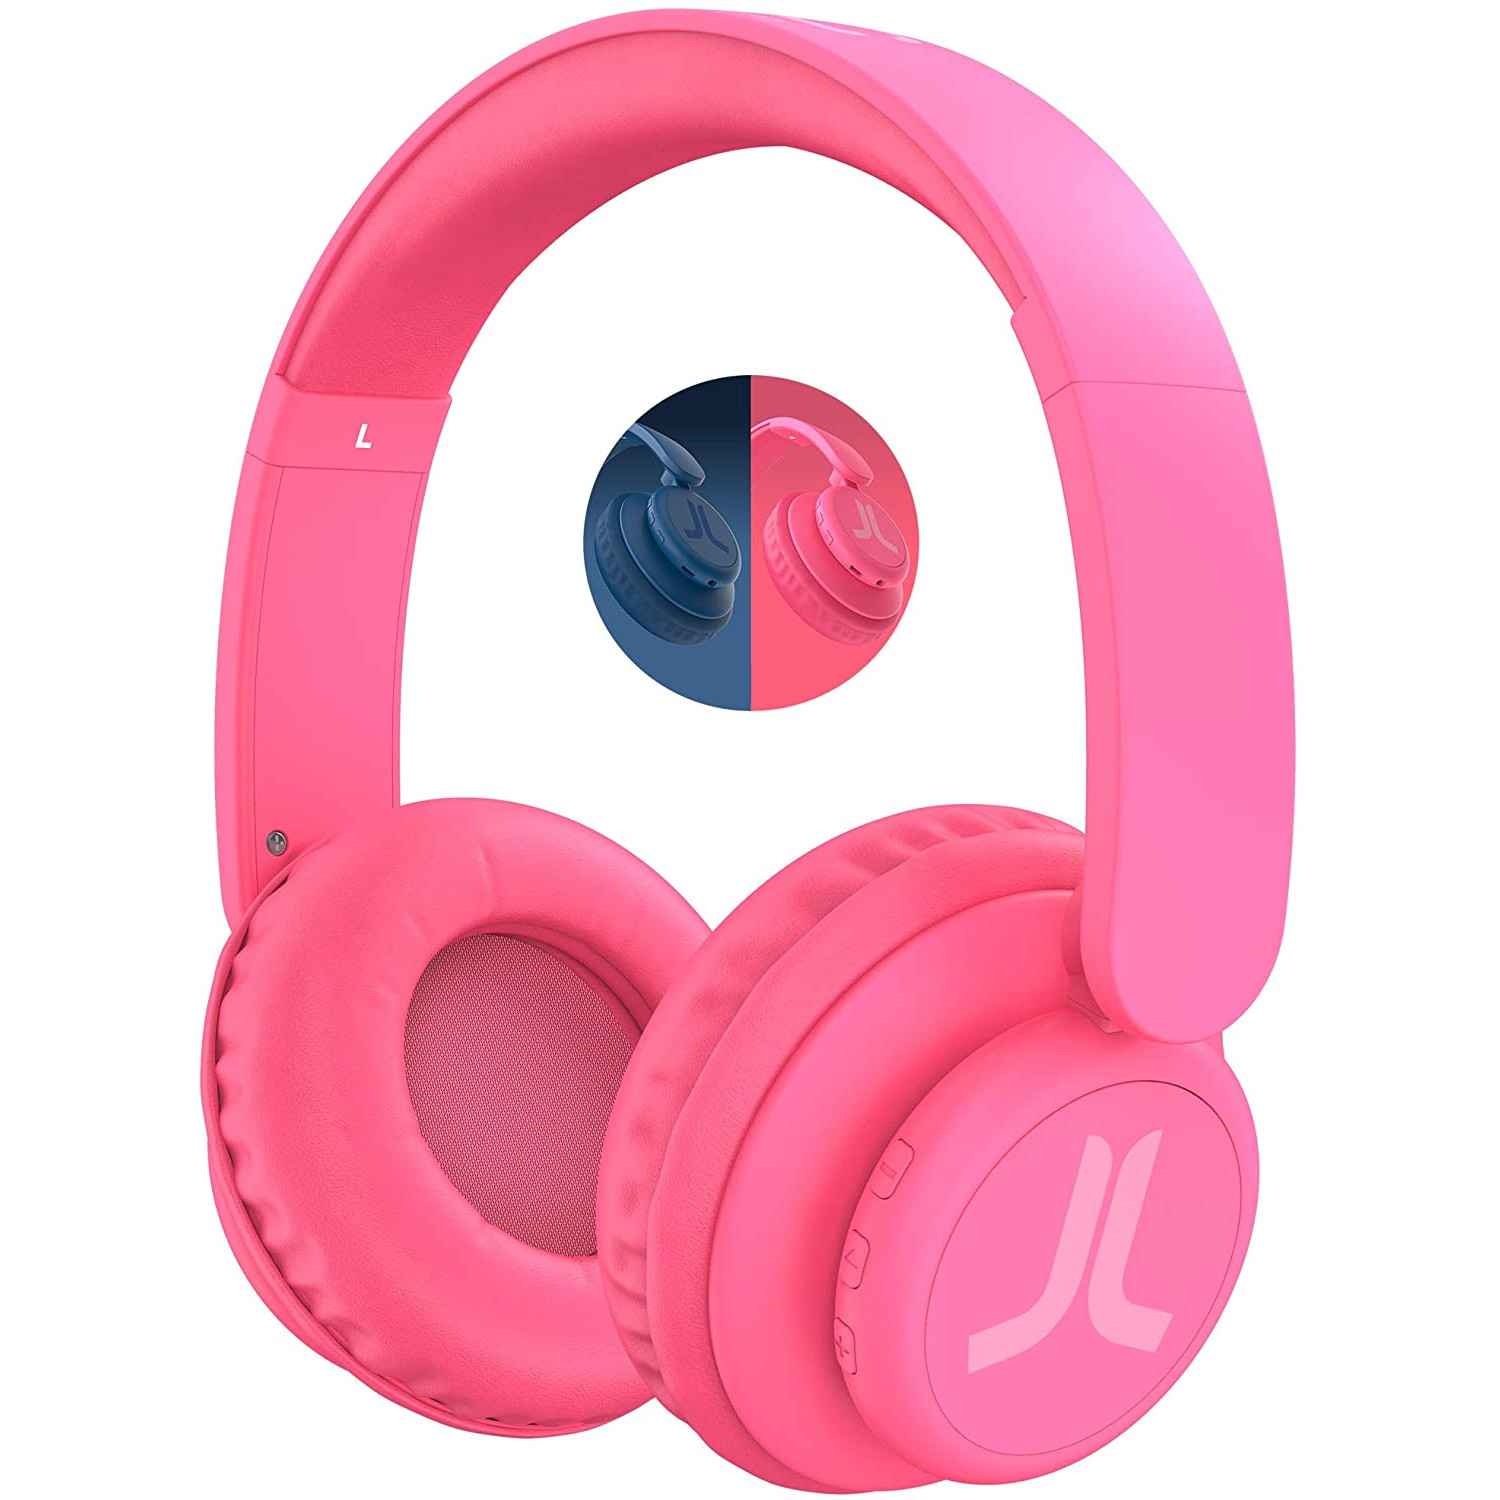 Ασύρματα ακουστικά WESC με χρόνο αναπαραγωγής 9 ωρών ή χρόνος ομιλίας 11  ωρών ροζ χρώματος 41420 - Warp.gr